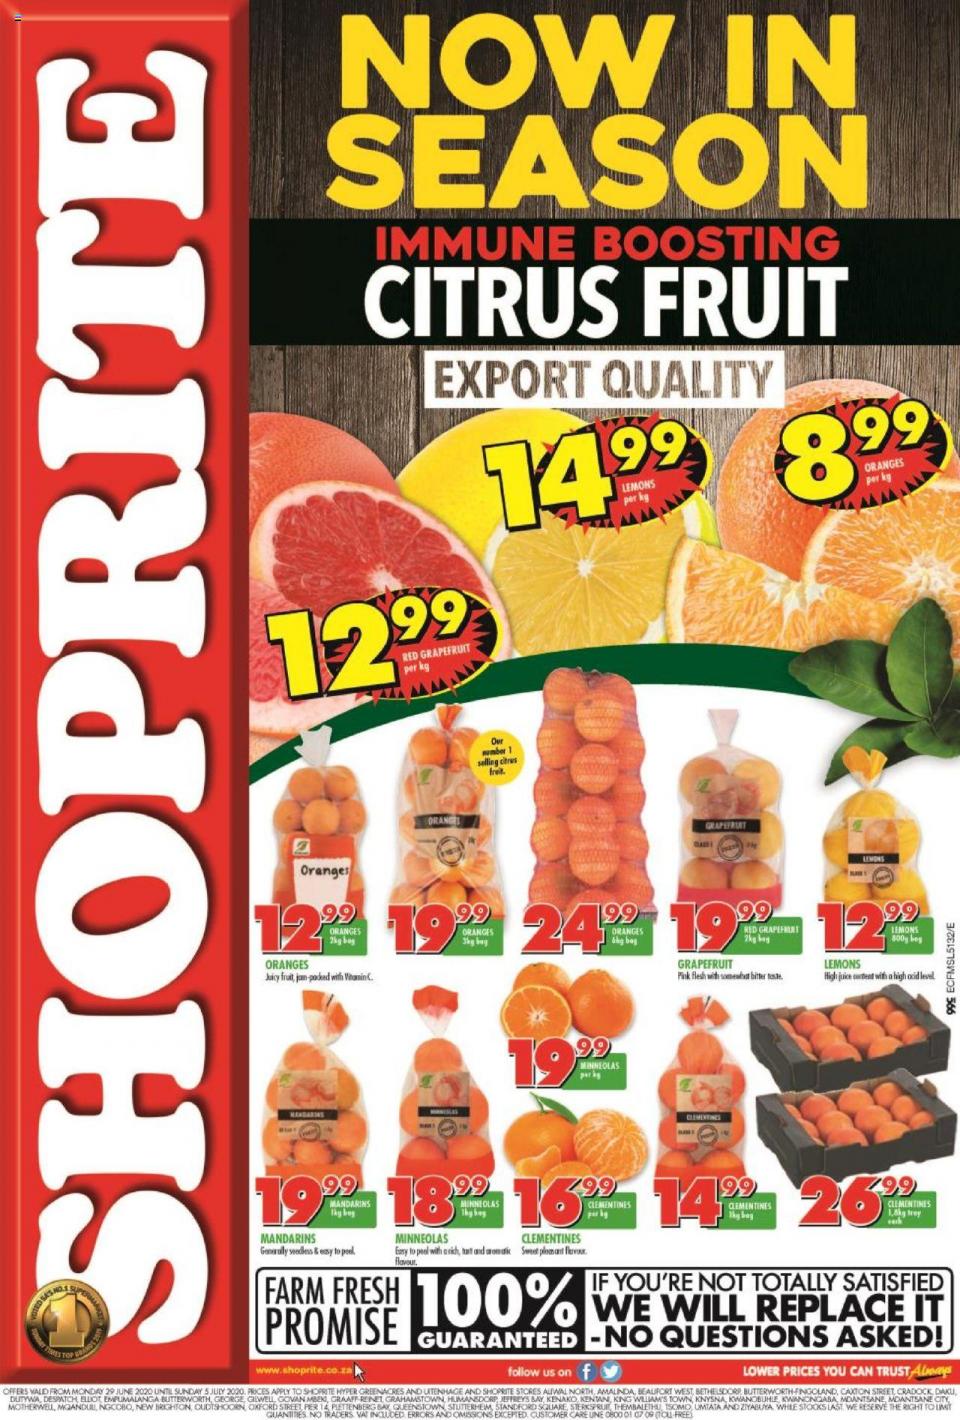 Shoprite Specials Citrus Fruit Promotion 29 June 2020 | Eastern Cape